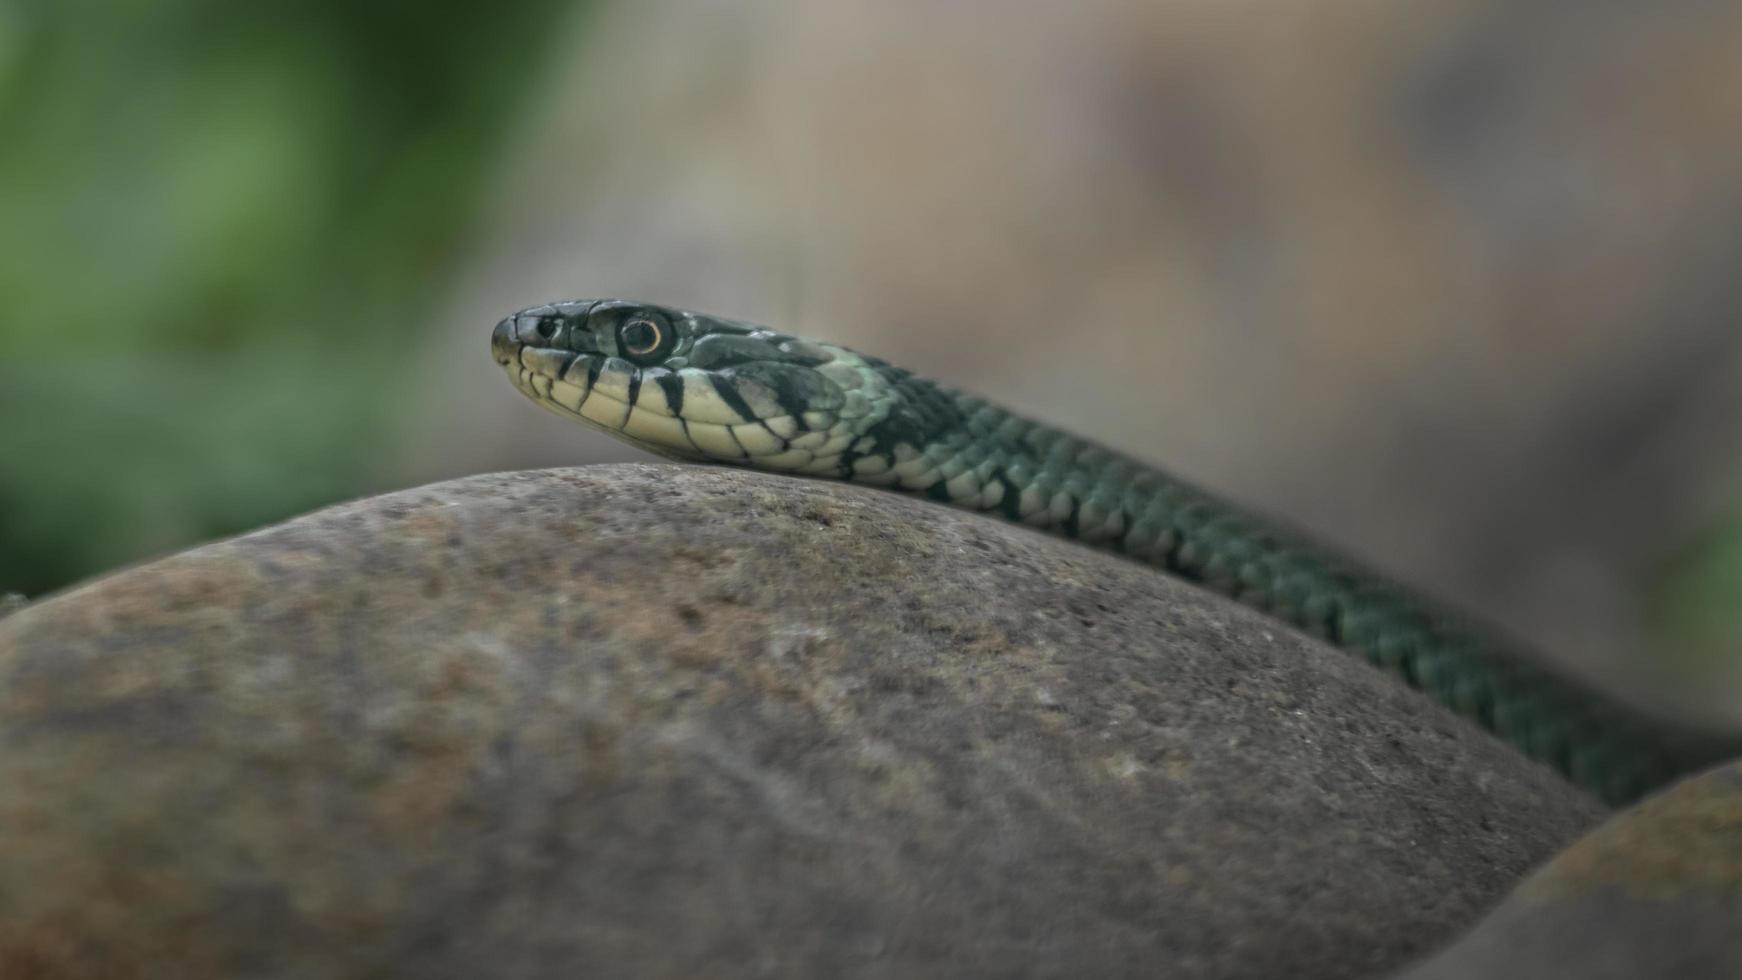 Grass snake on rock photo